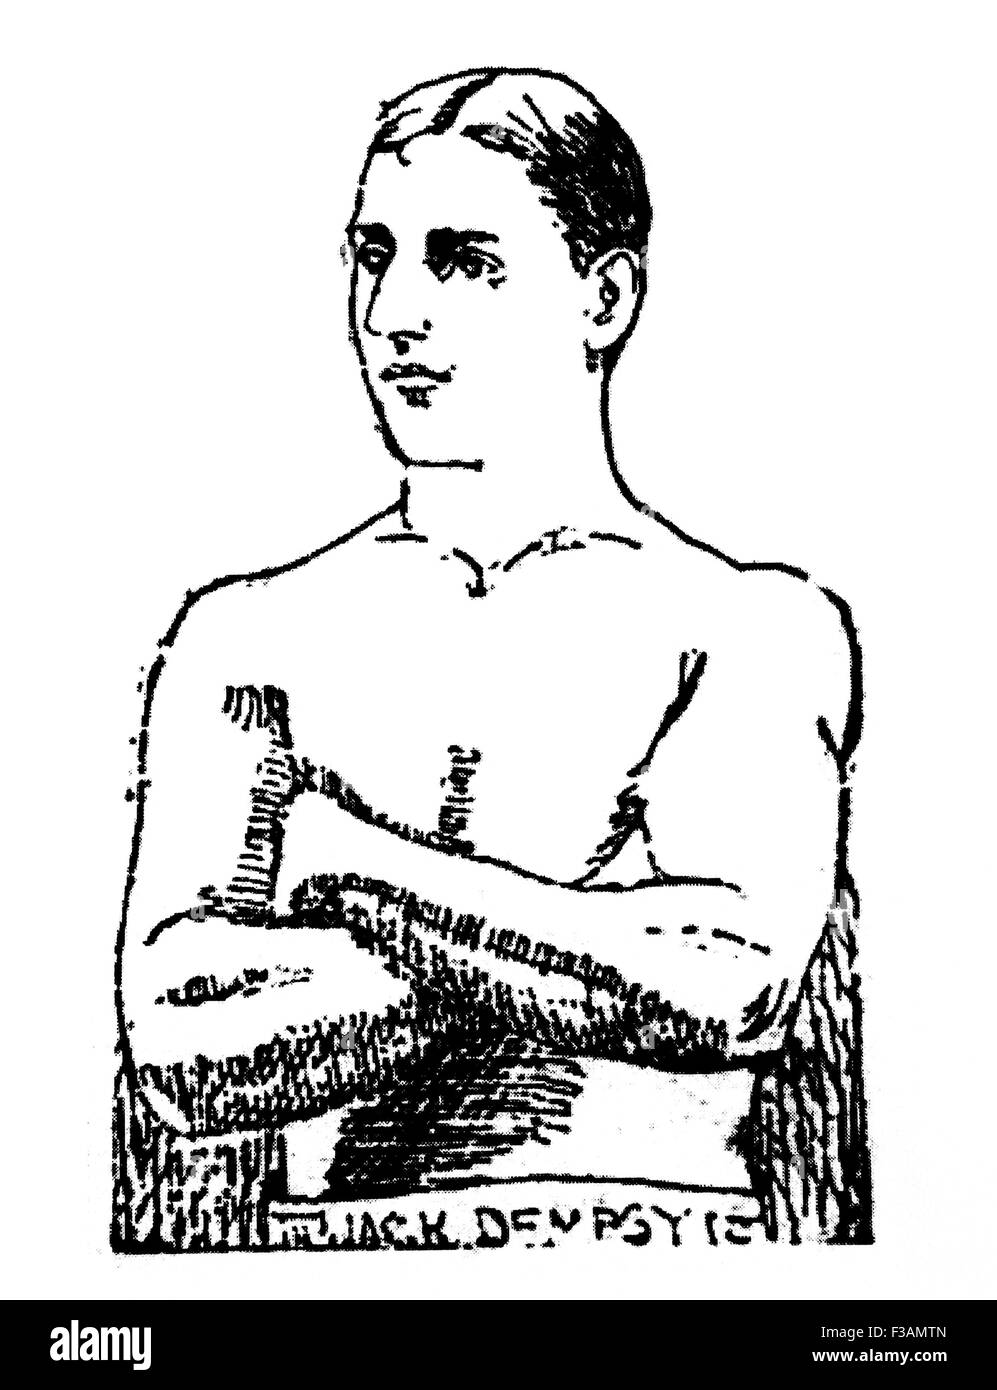 Oldtimer Zeitung Porträt des irisch-amerikanischen Boxer 'Bali' Jack Dempsey (1862-1895) - bewertet oft als eines der größten zerstoßen für zerstoßen Kämpfer in der Geschichte. Dempsey (richtiger Name John Edward Kelly) kam aus Irland als Kind in New York und arbeitete in einer Lauf-Fabrik, bevor er sich seine Hand zu Ringen und Boxen im Jahre 1883. Er stieg zum amerikanischen und World Champion im Mittelgewicht und seinen Ruf als unschlagbare brachte ihm den Spitznamen "Unikat", wie er galt ohne gleichen. Stockfoto